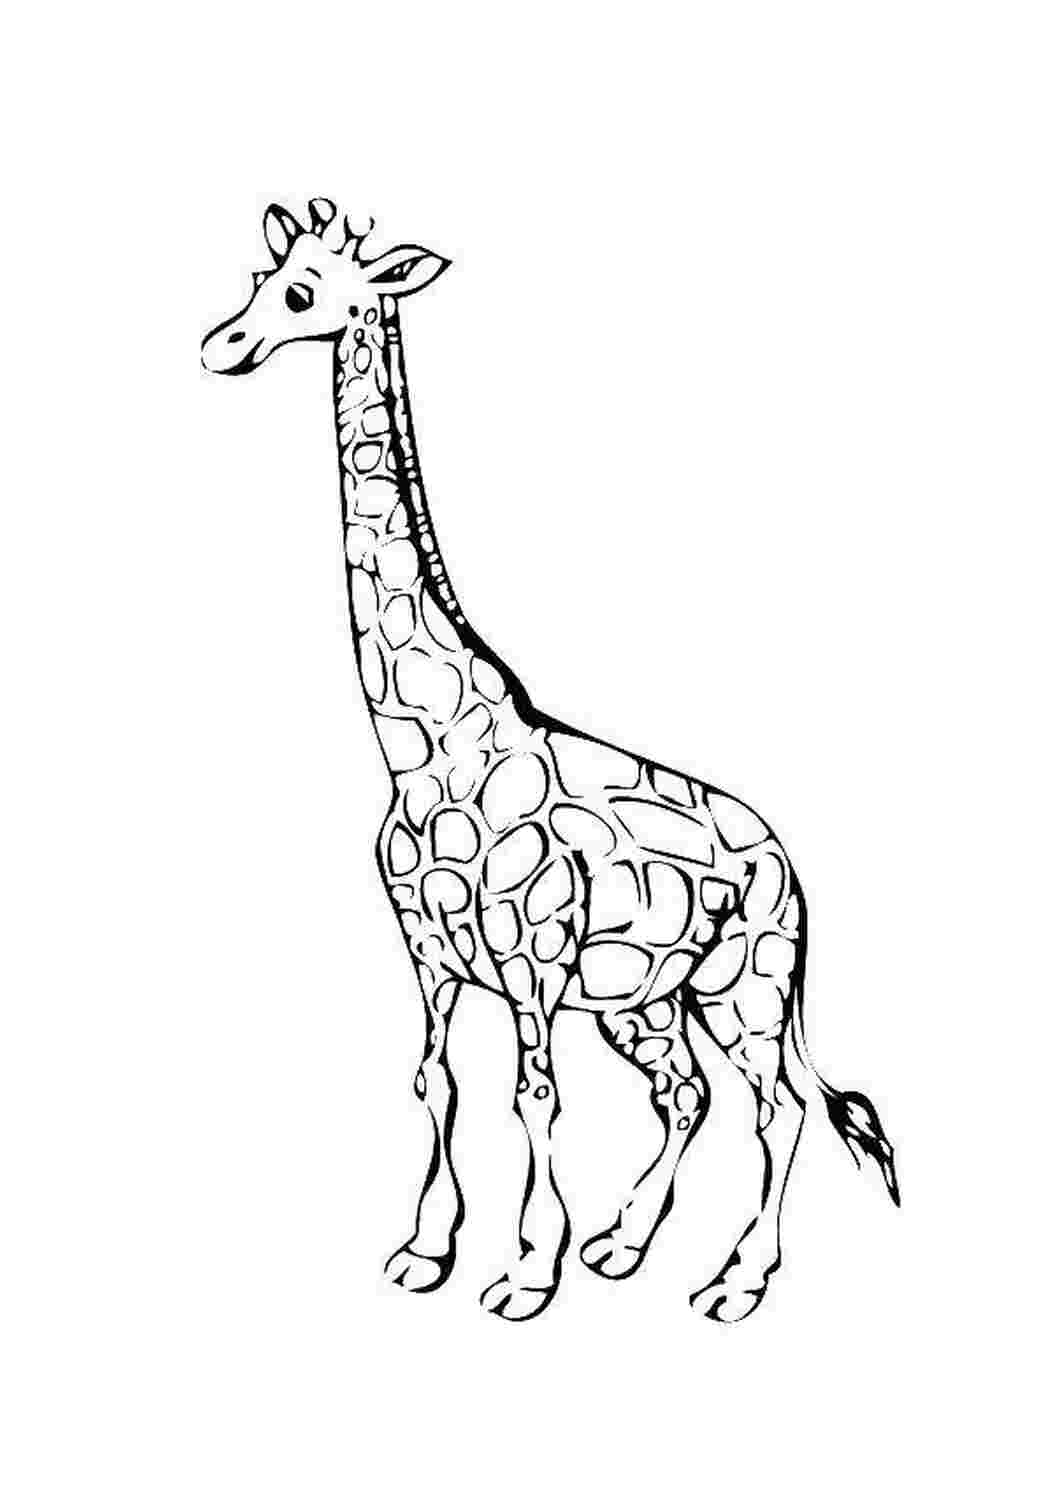 Giraffe рисунок для детей раскраска